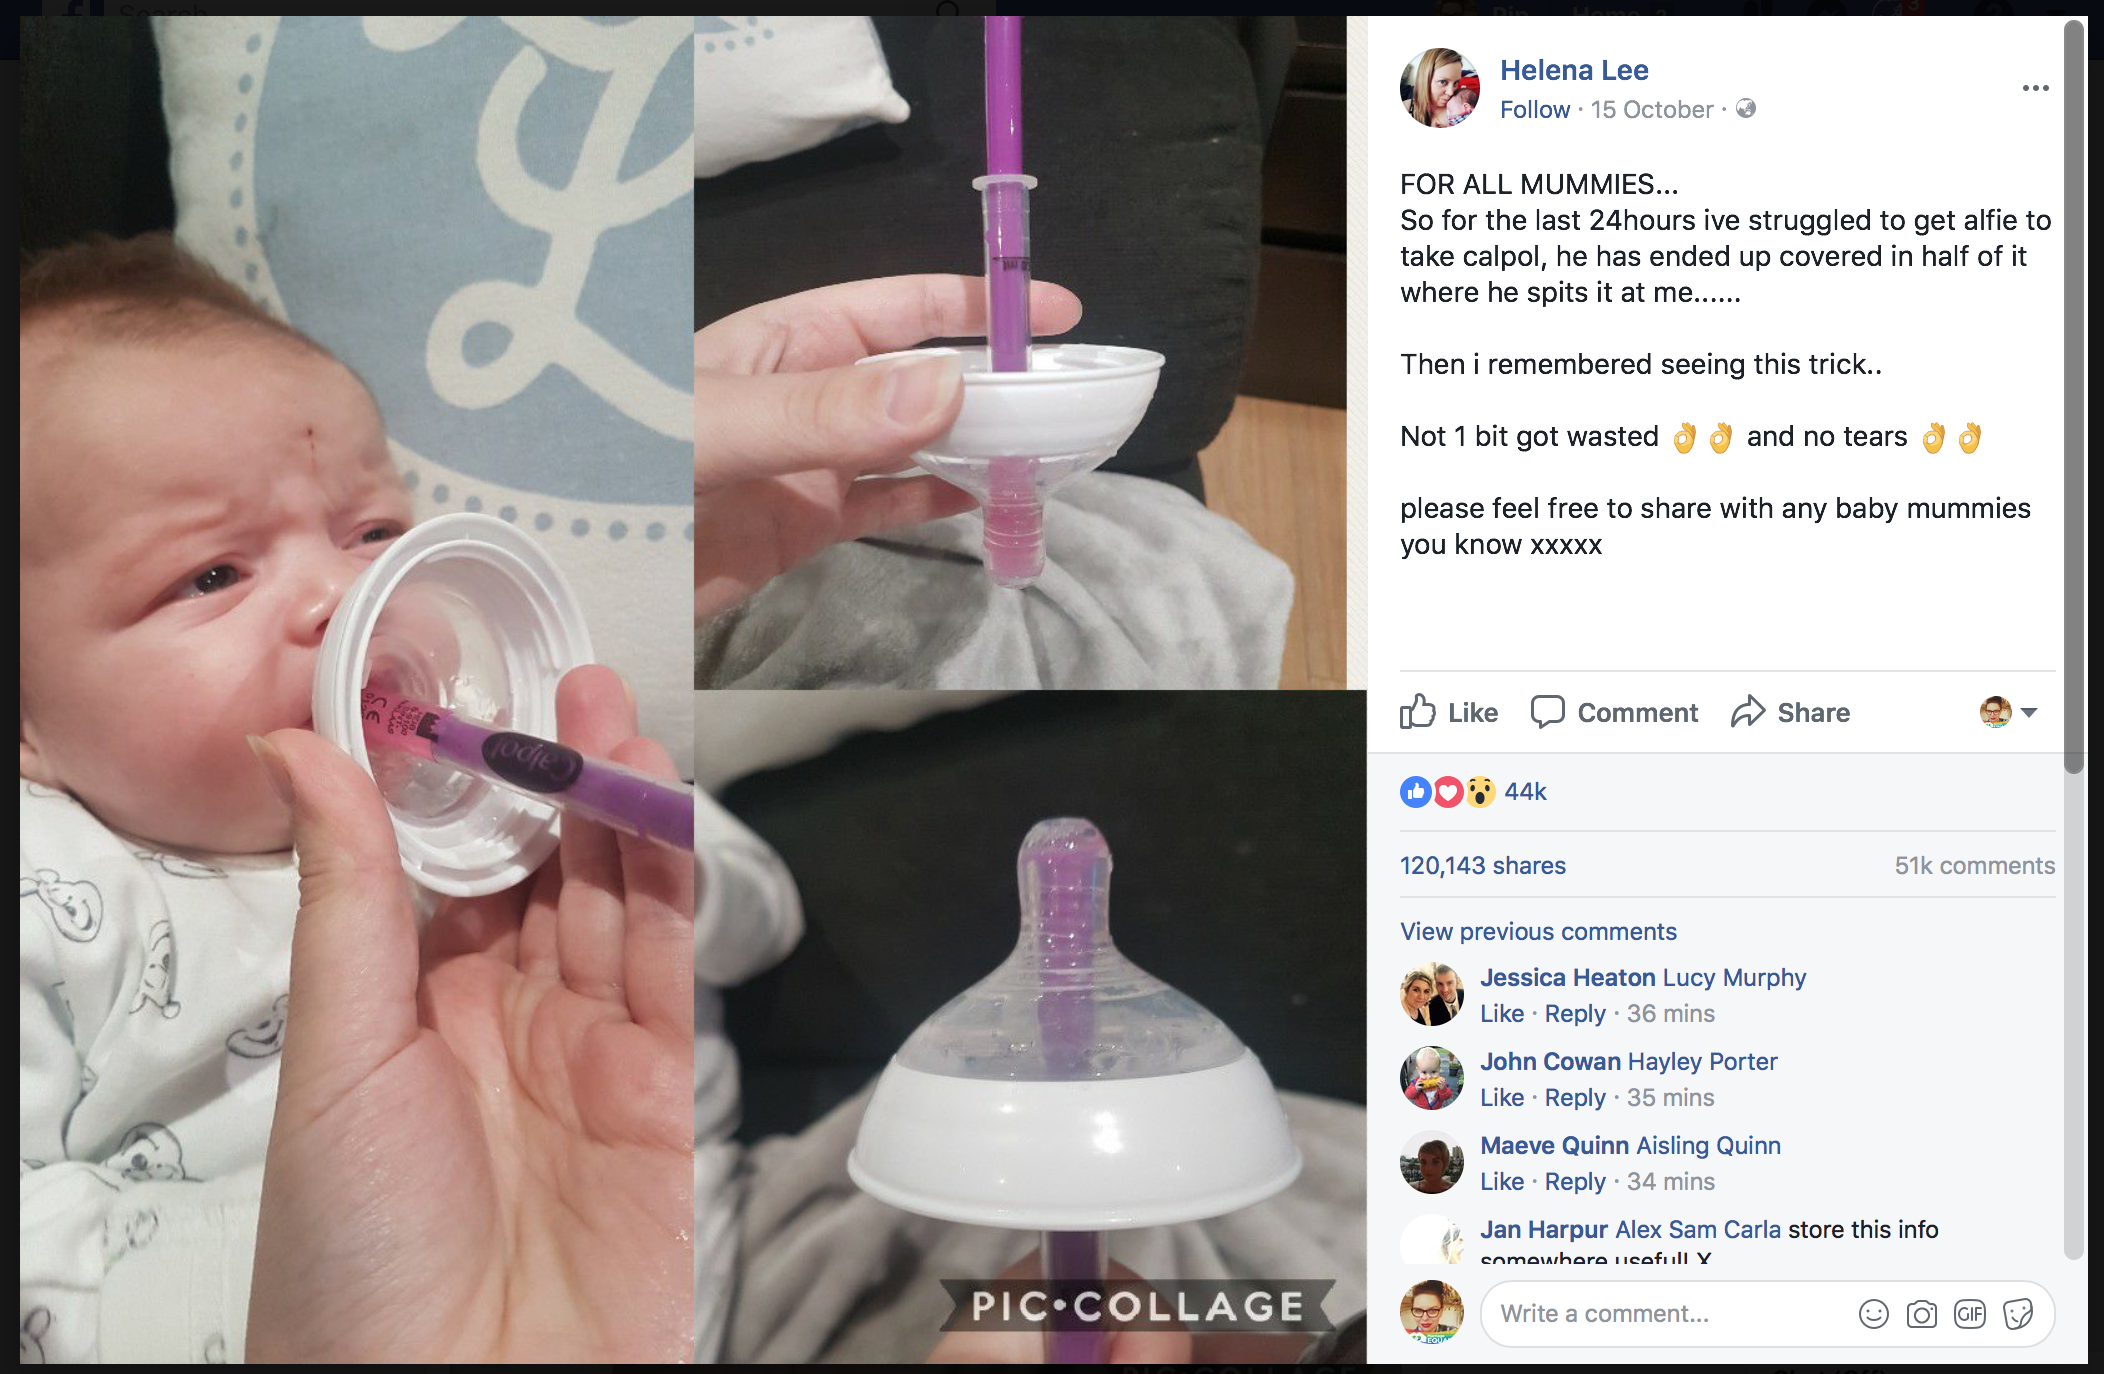 Baby bottle medicine syringe hack for dosing babies